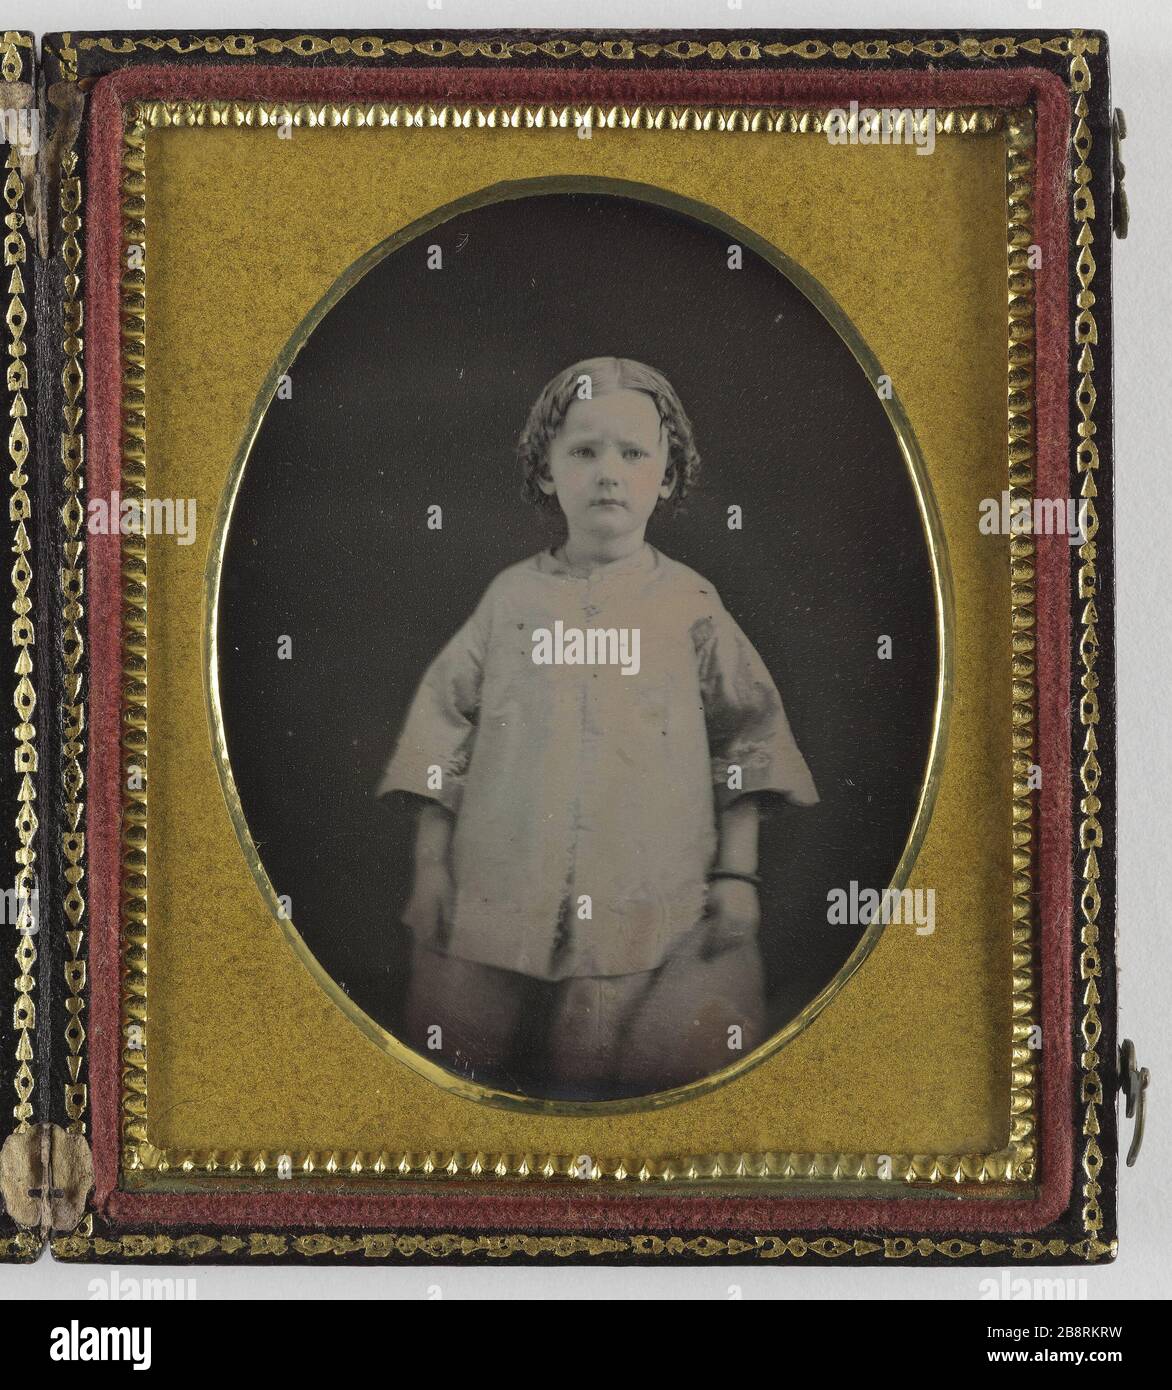 Child Enfant. Photographie anonyme. Daguerréotype coloré présenté dans un écrin, 1845. Paris, musée Carnavalet. Stock Photo